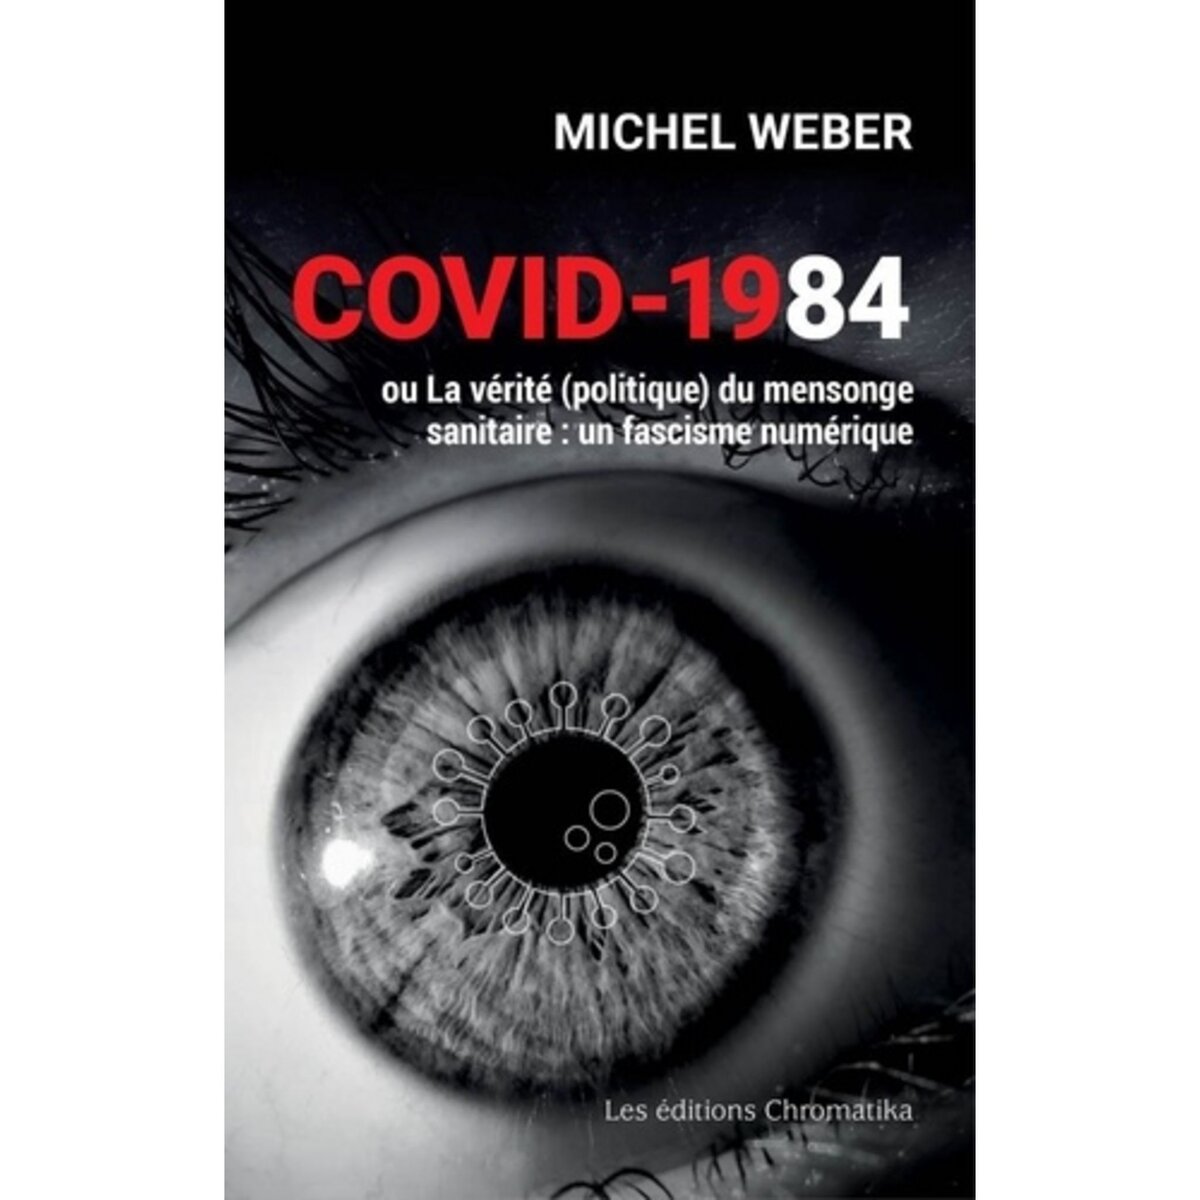  COVID-1984 OU LA VERITE (POLITIQUE) DU MENSONGE SANITAIRE. UN FASCISME NUMERIQUE, Weber Michel